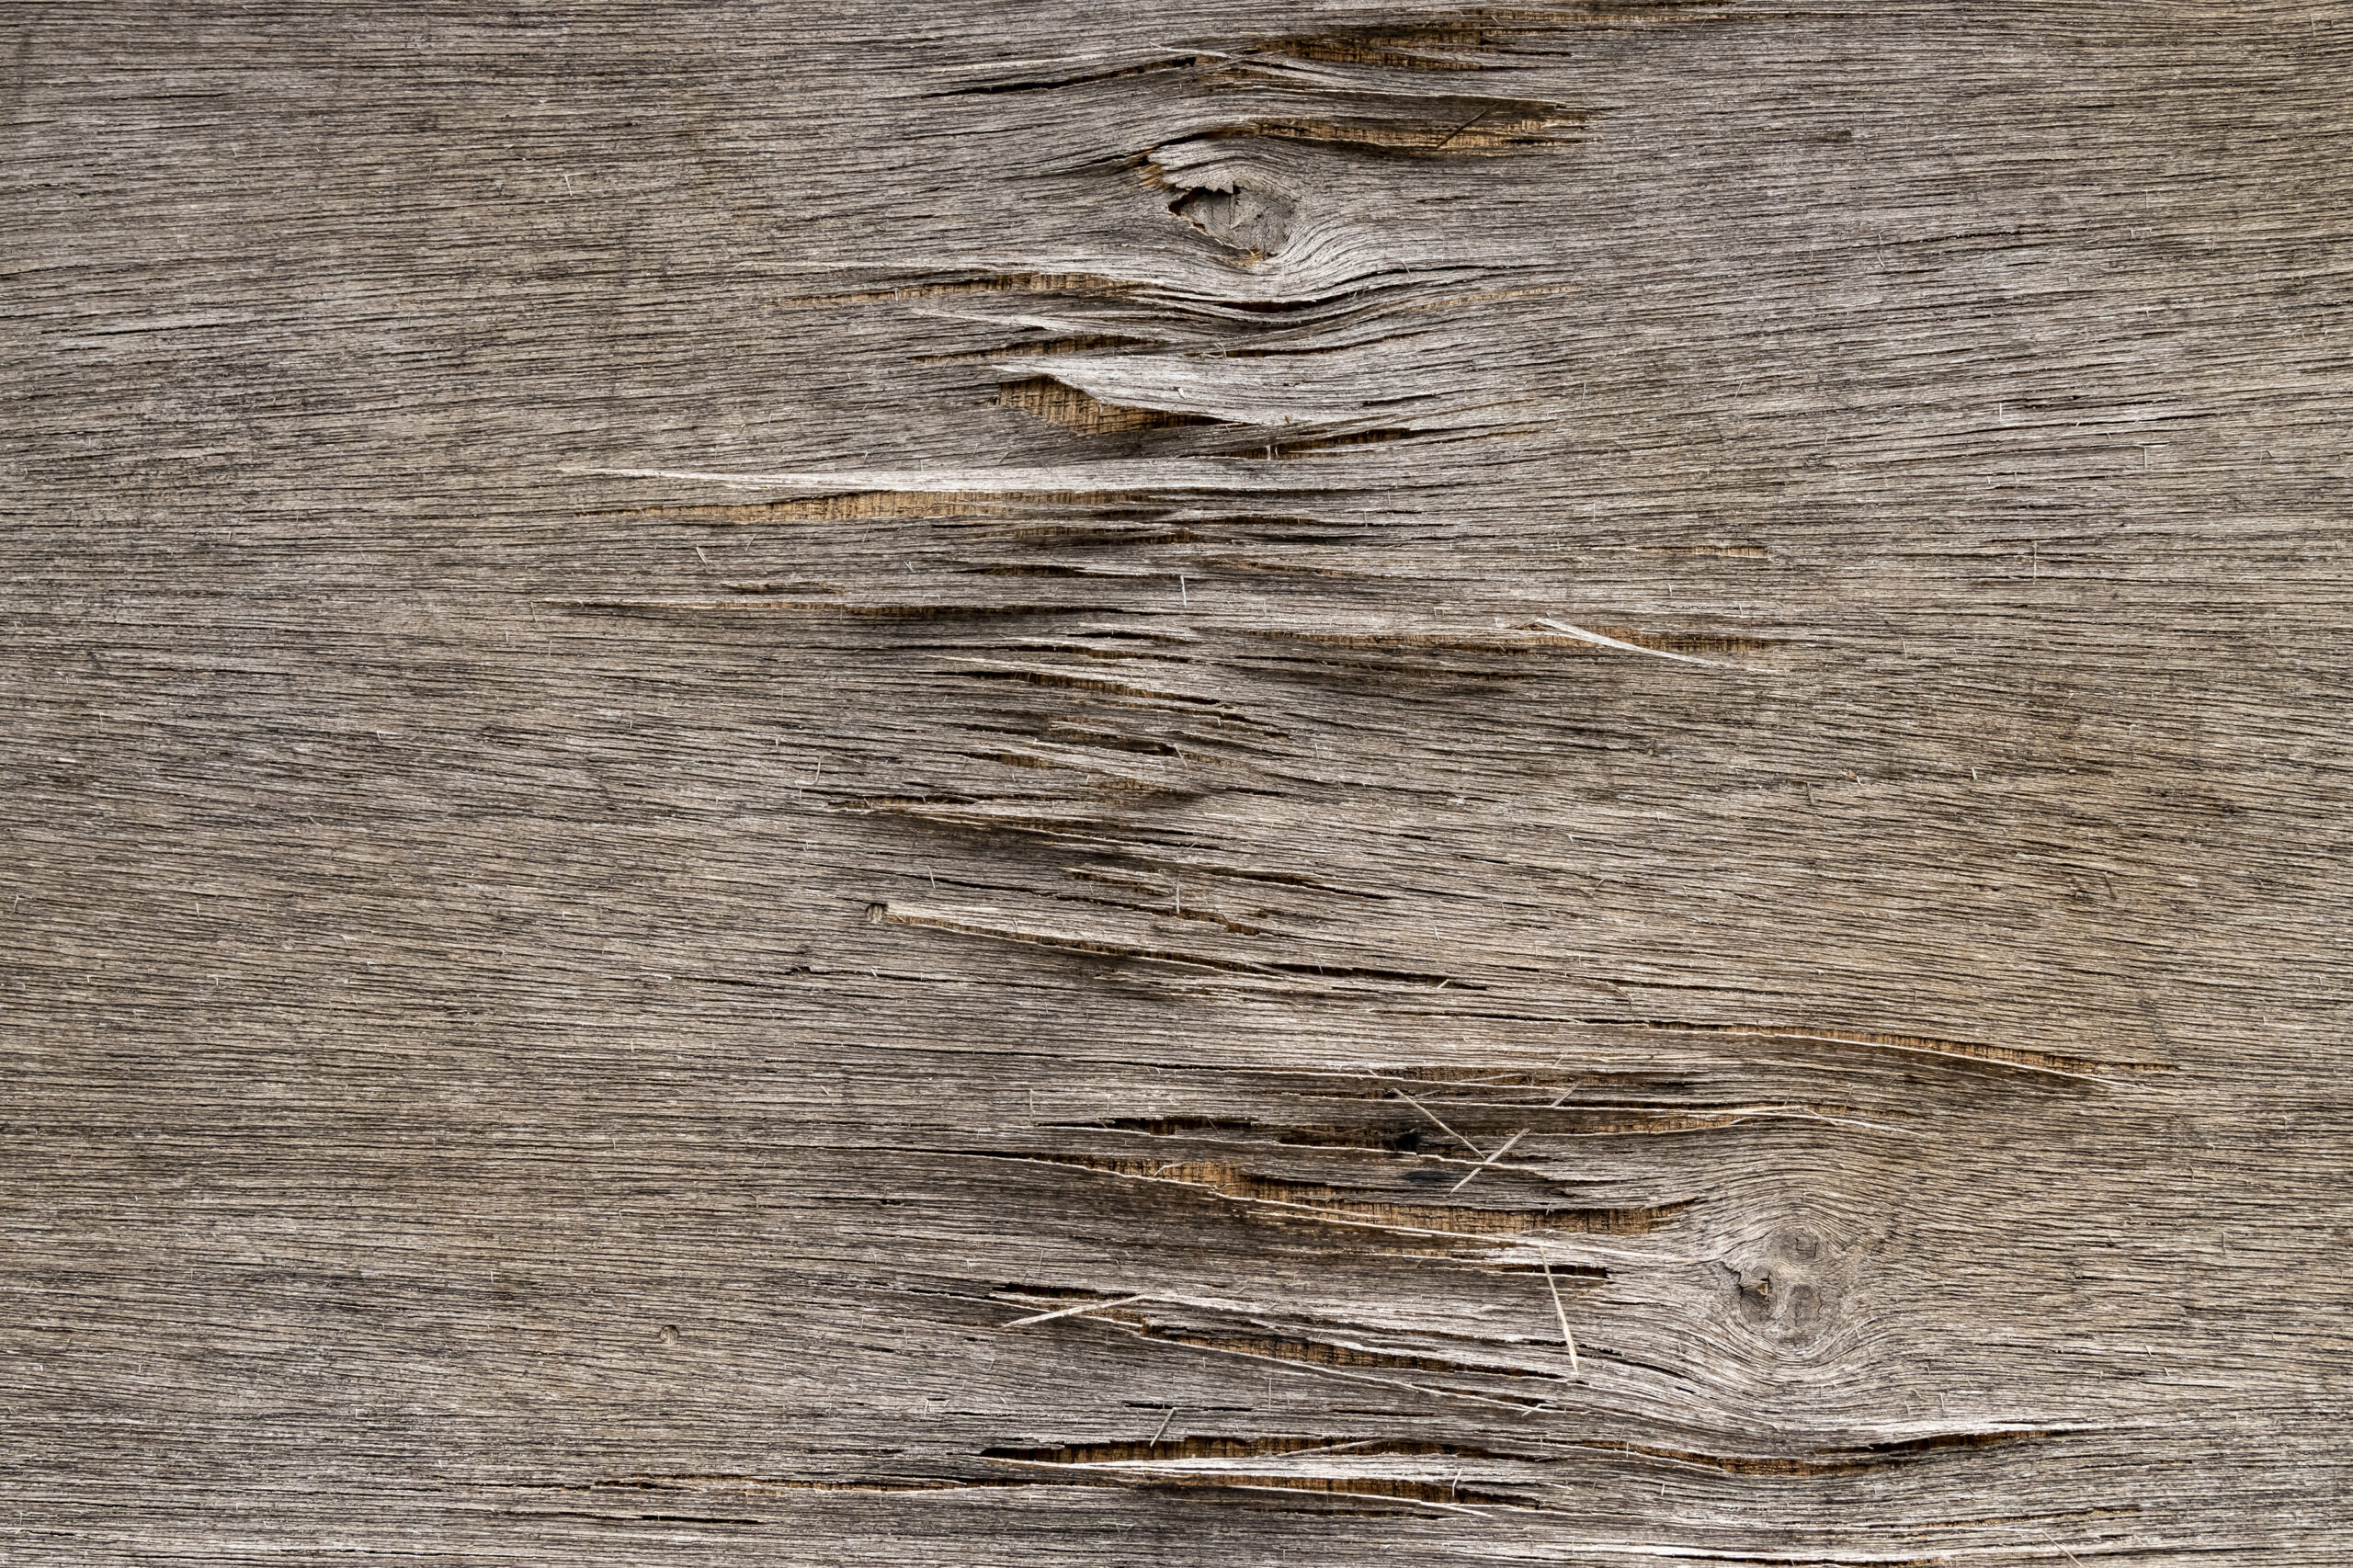 ウッドデッキの劣化の原因とメンテナンス方法を知る。長く使うためには再生木・人工木という選択も。